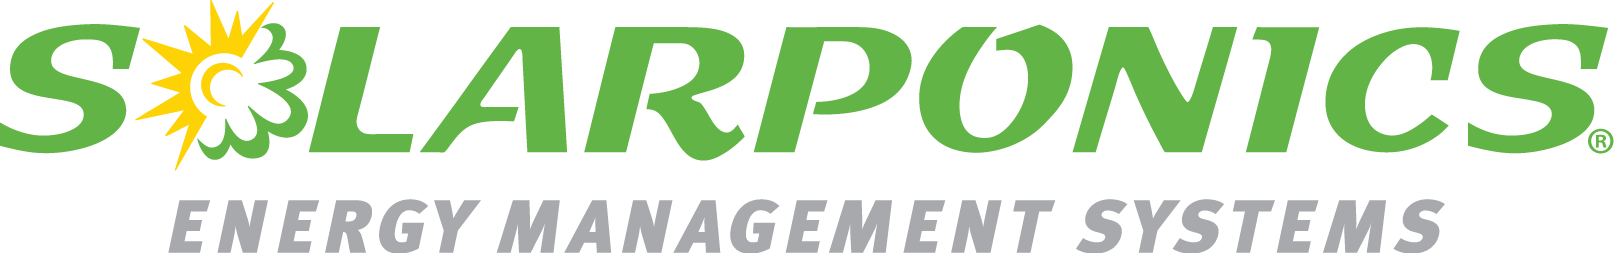 logo-RGB.png